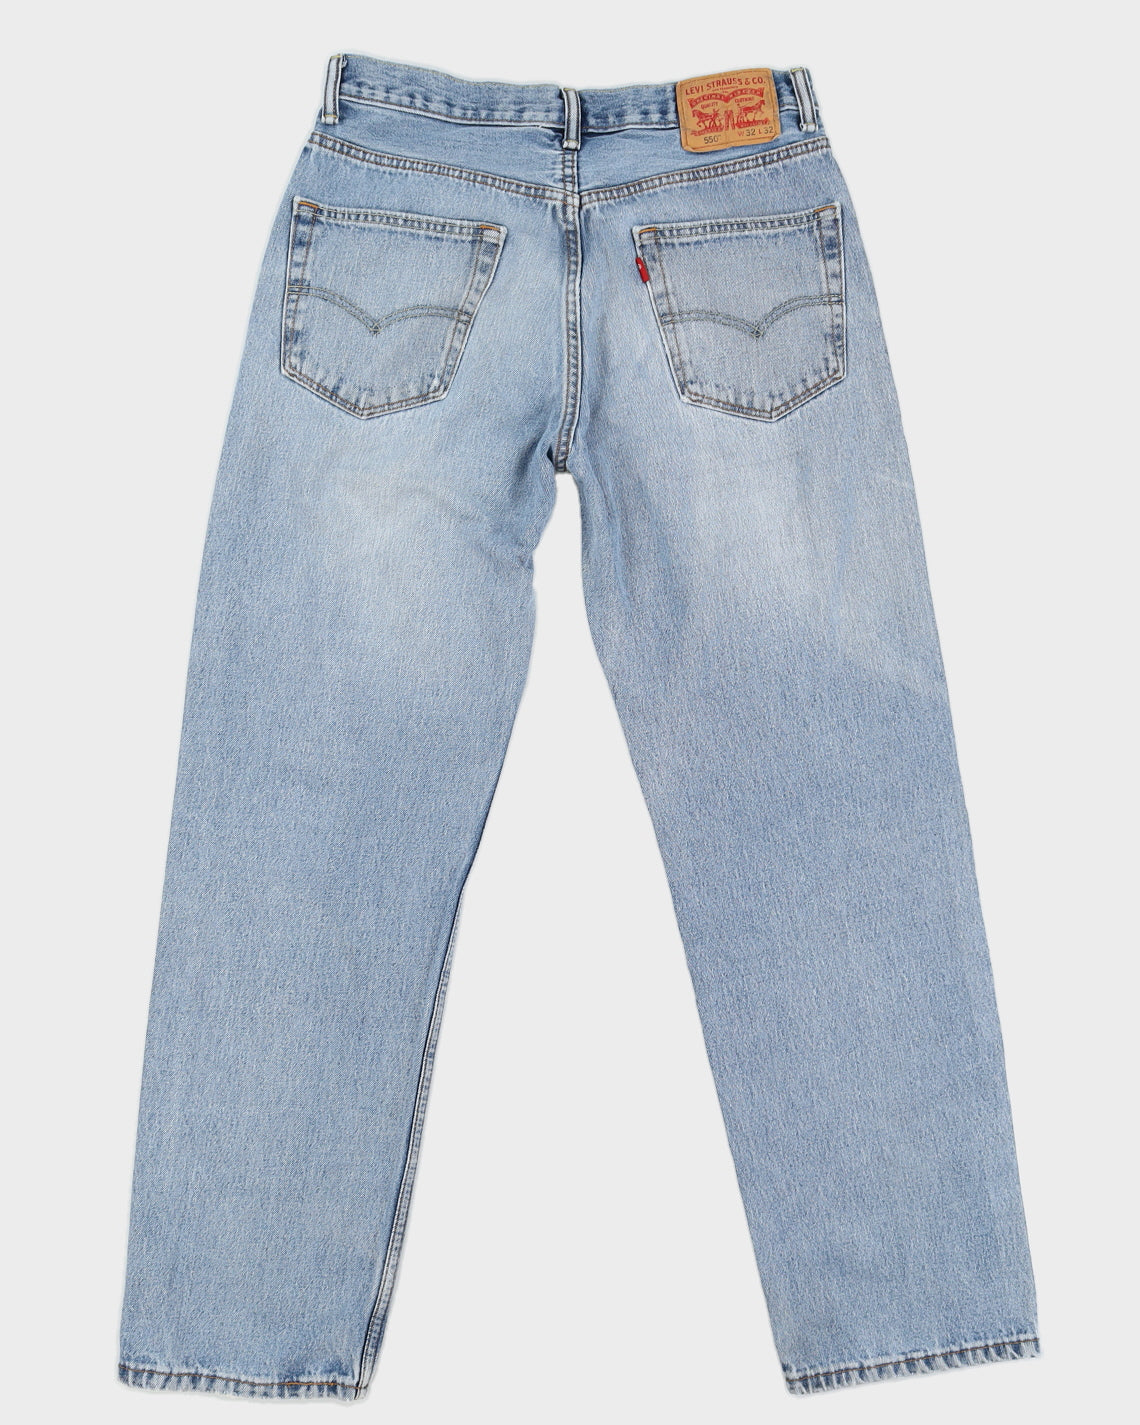 Levi's 550 Medium Wash Blue Denim Jeans - W32 L32